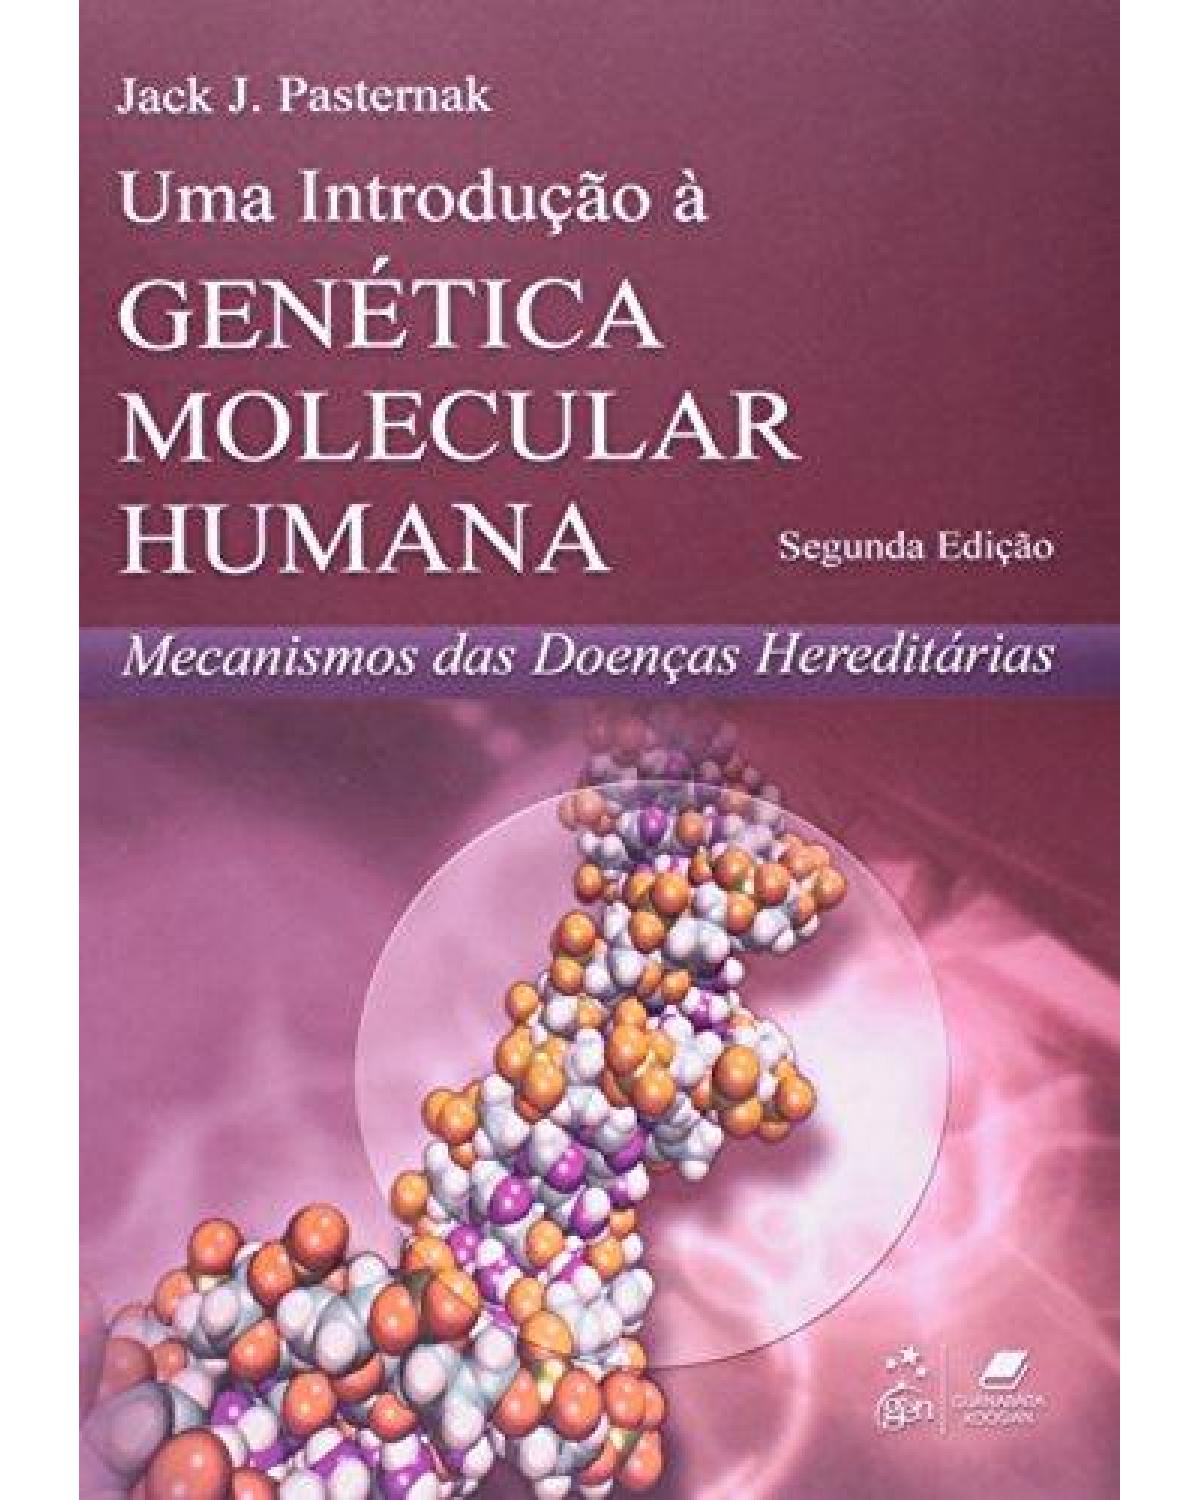 Uma introdução à genética molecular humana - Mecanismos das doenças hereditárias - 2ª Edição | 2007